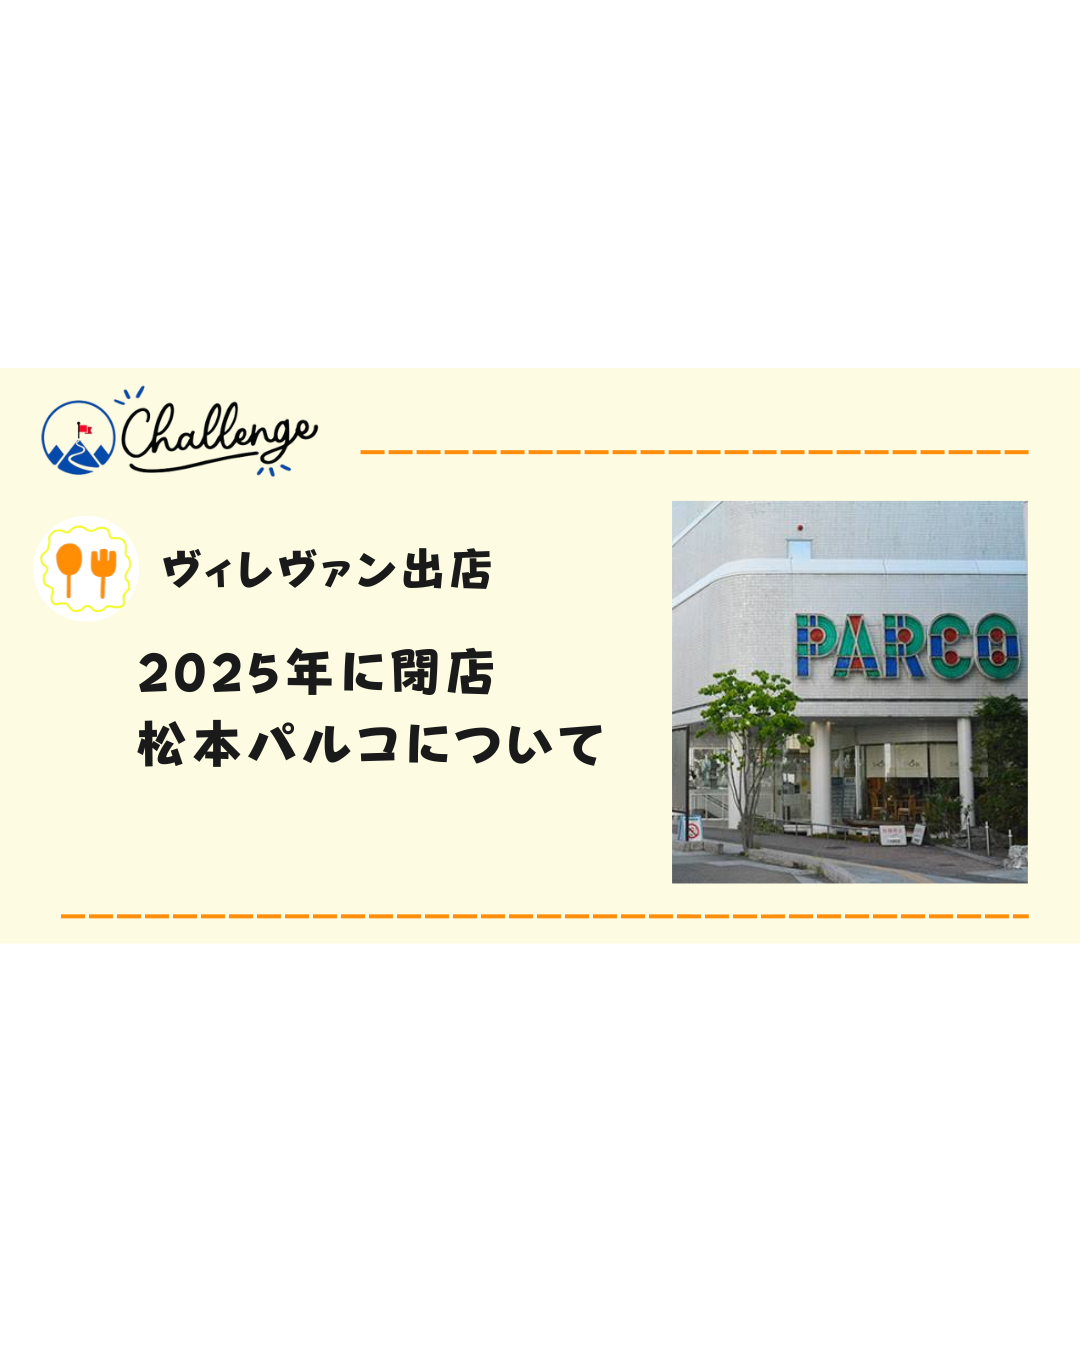 【2025年閉店】ヴィレヴァンがオープン予定の松本パルコってどんなお店？